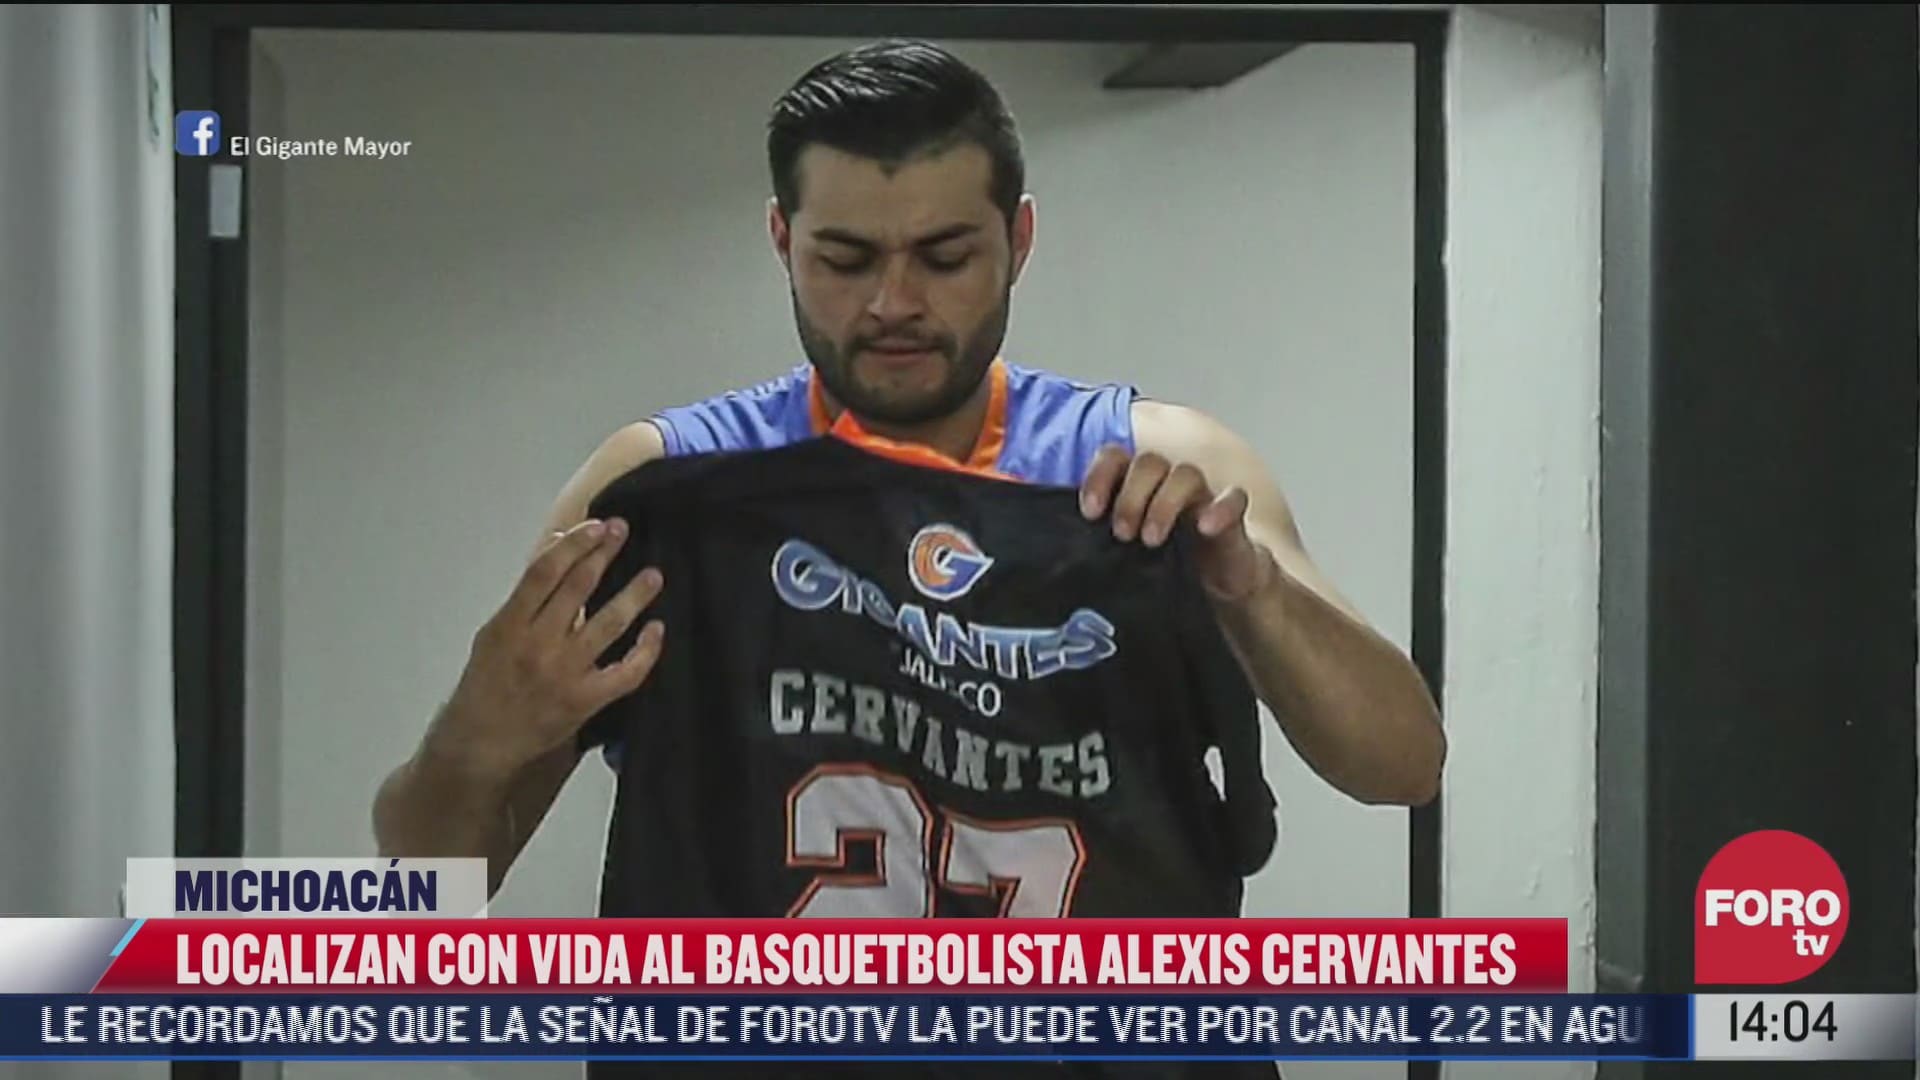 investigaciones apuntan a que desaparicion del basquetbolista alexis cervantes se debio a un secuestro